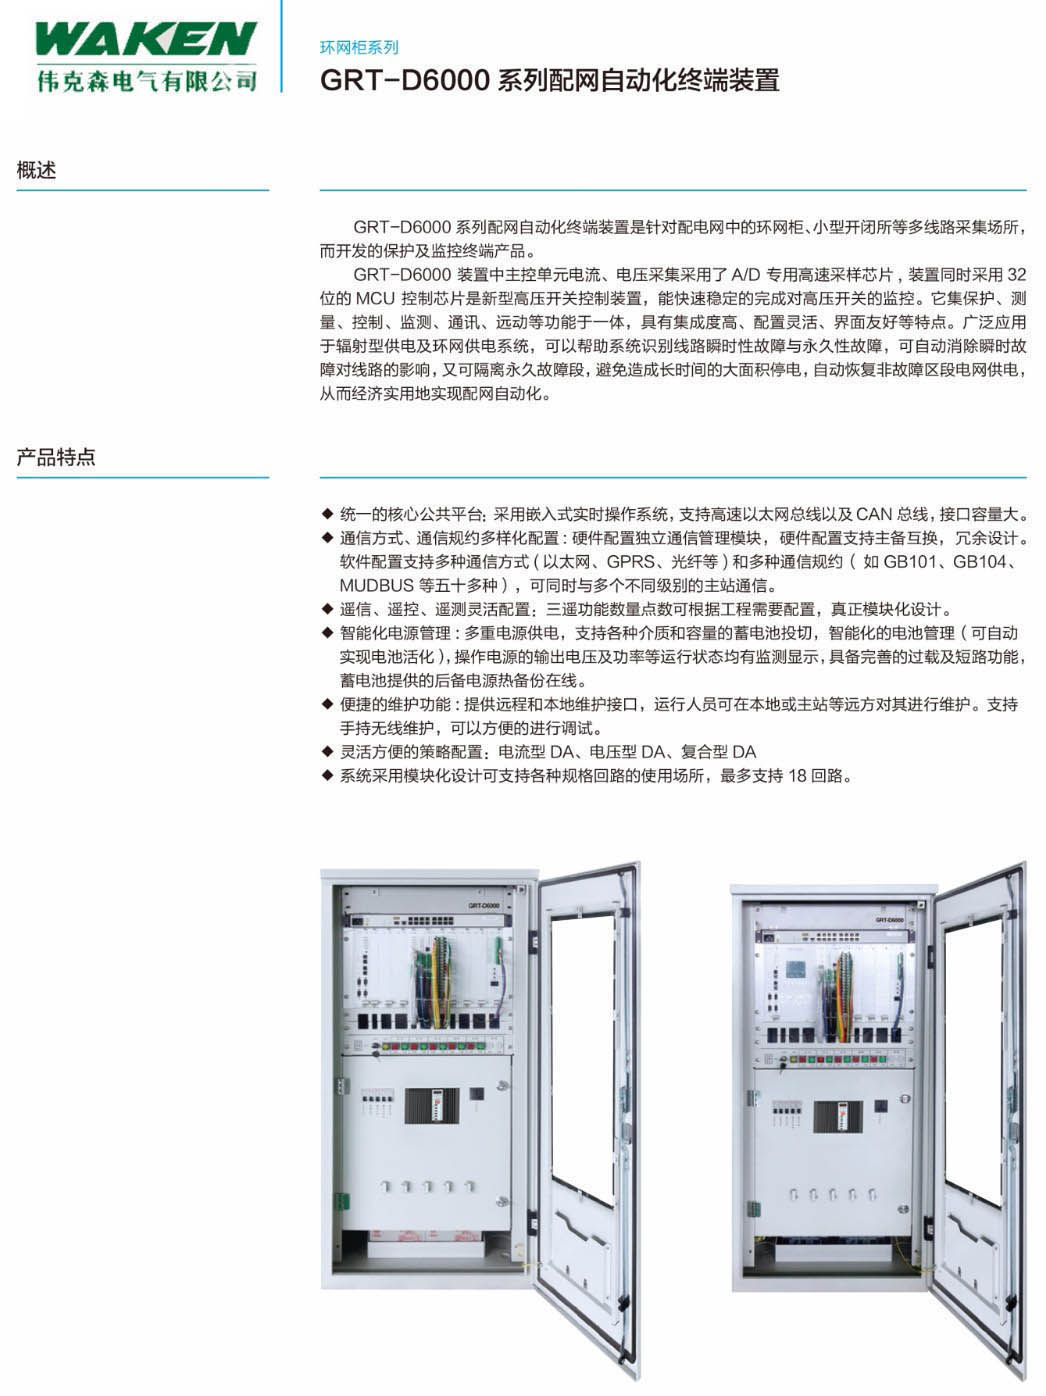 GRT-D6000系列配网自动化终端装置|环网柜-浙江伟克森电力科技有限公司